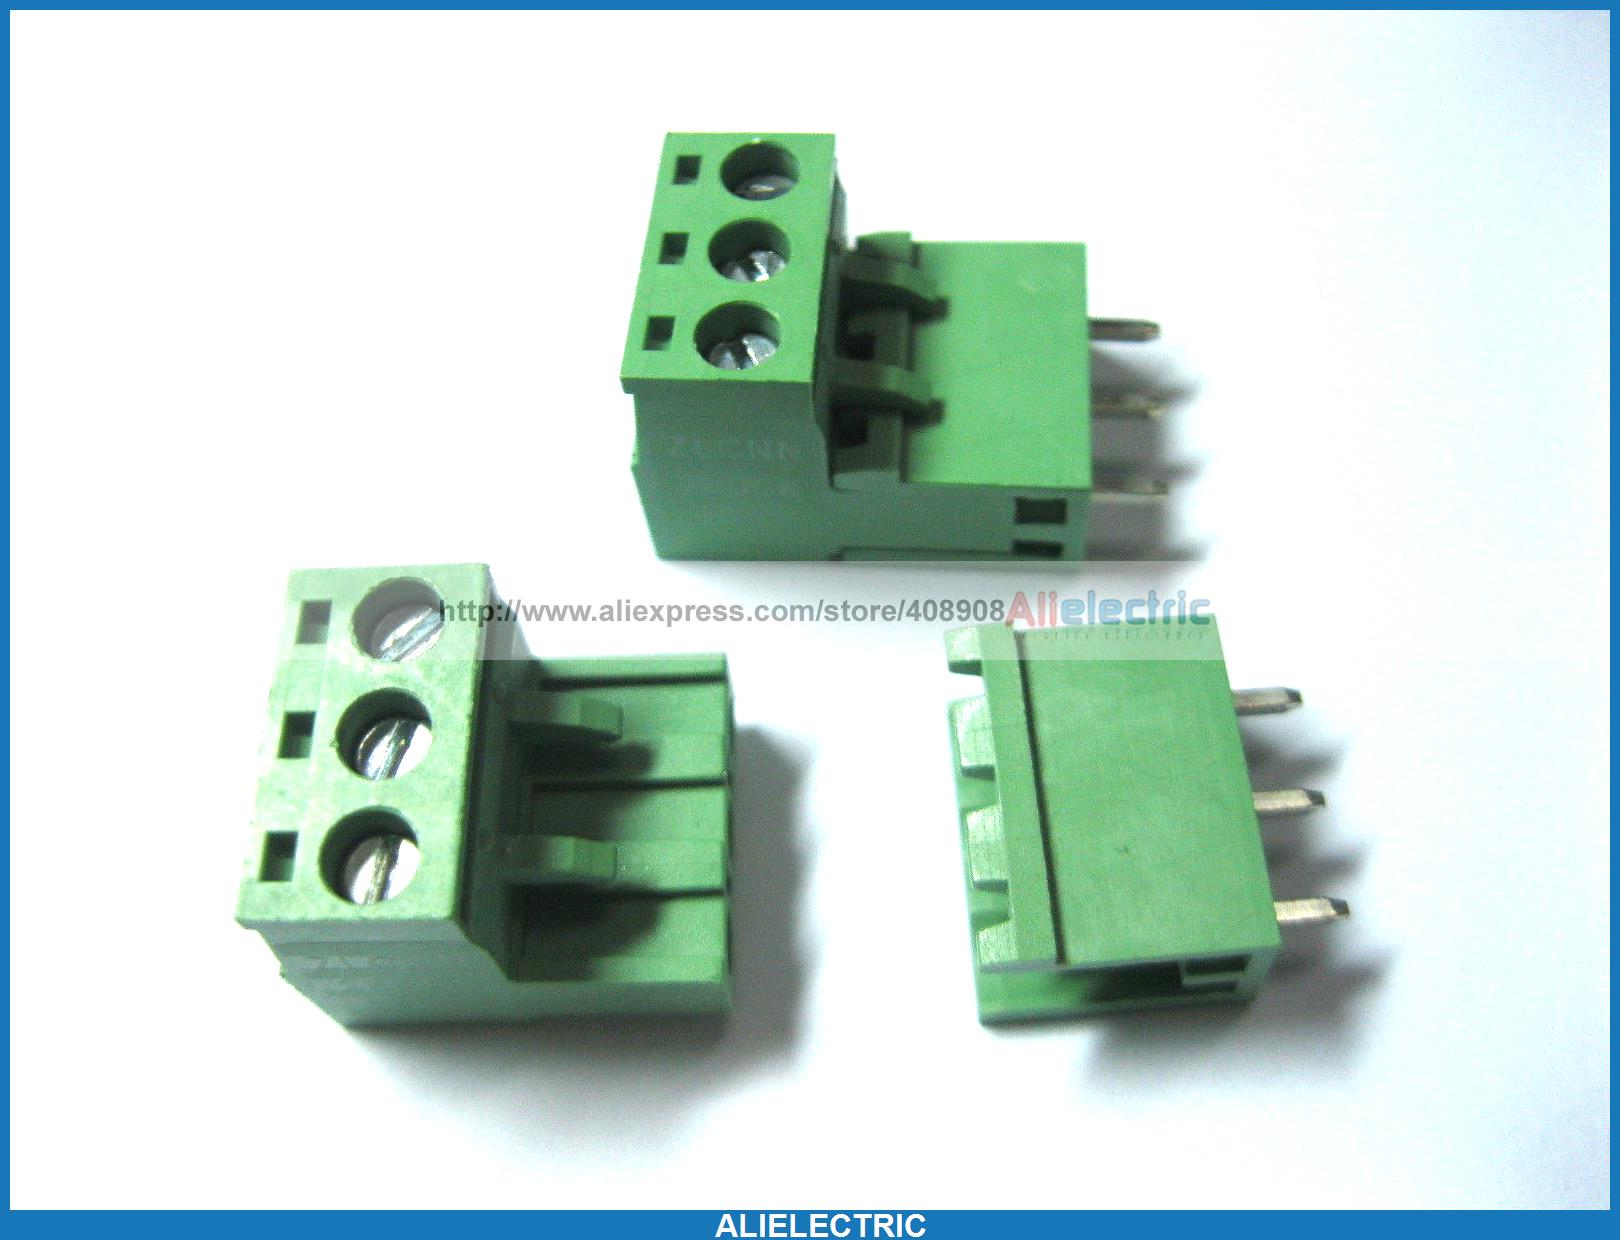 10 Stks Groen 3 Pin 5 08mm Schroef Blokaansluiting Uitbreidbare Type